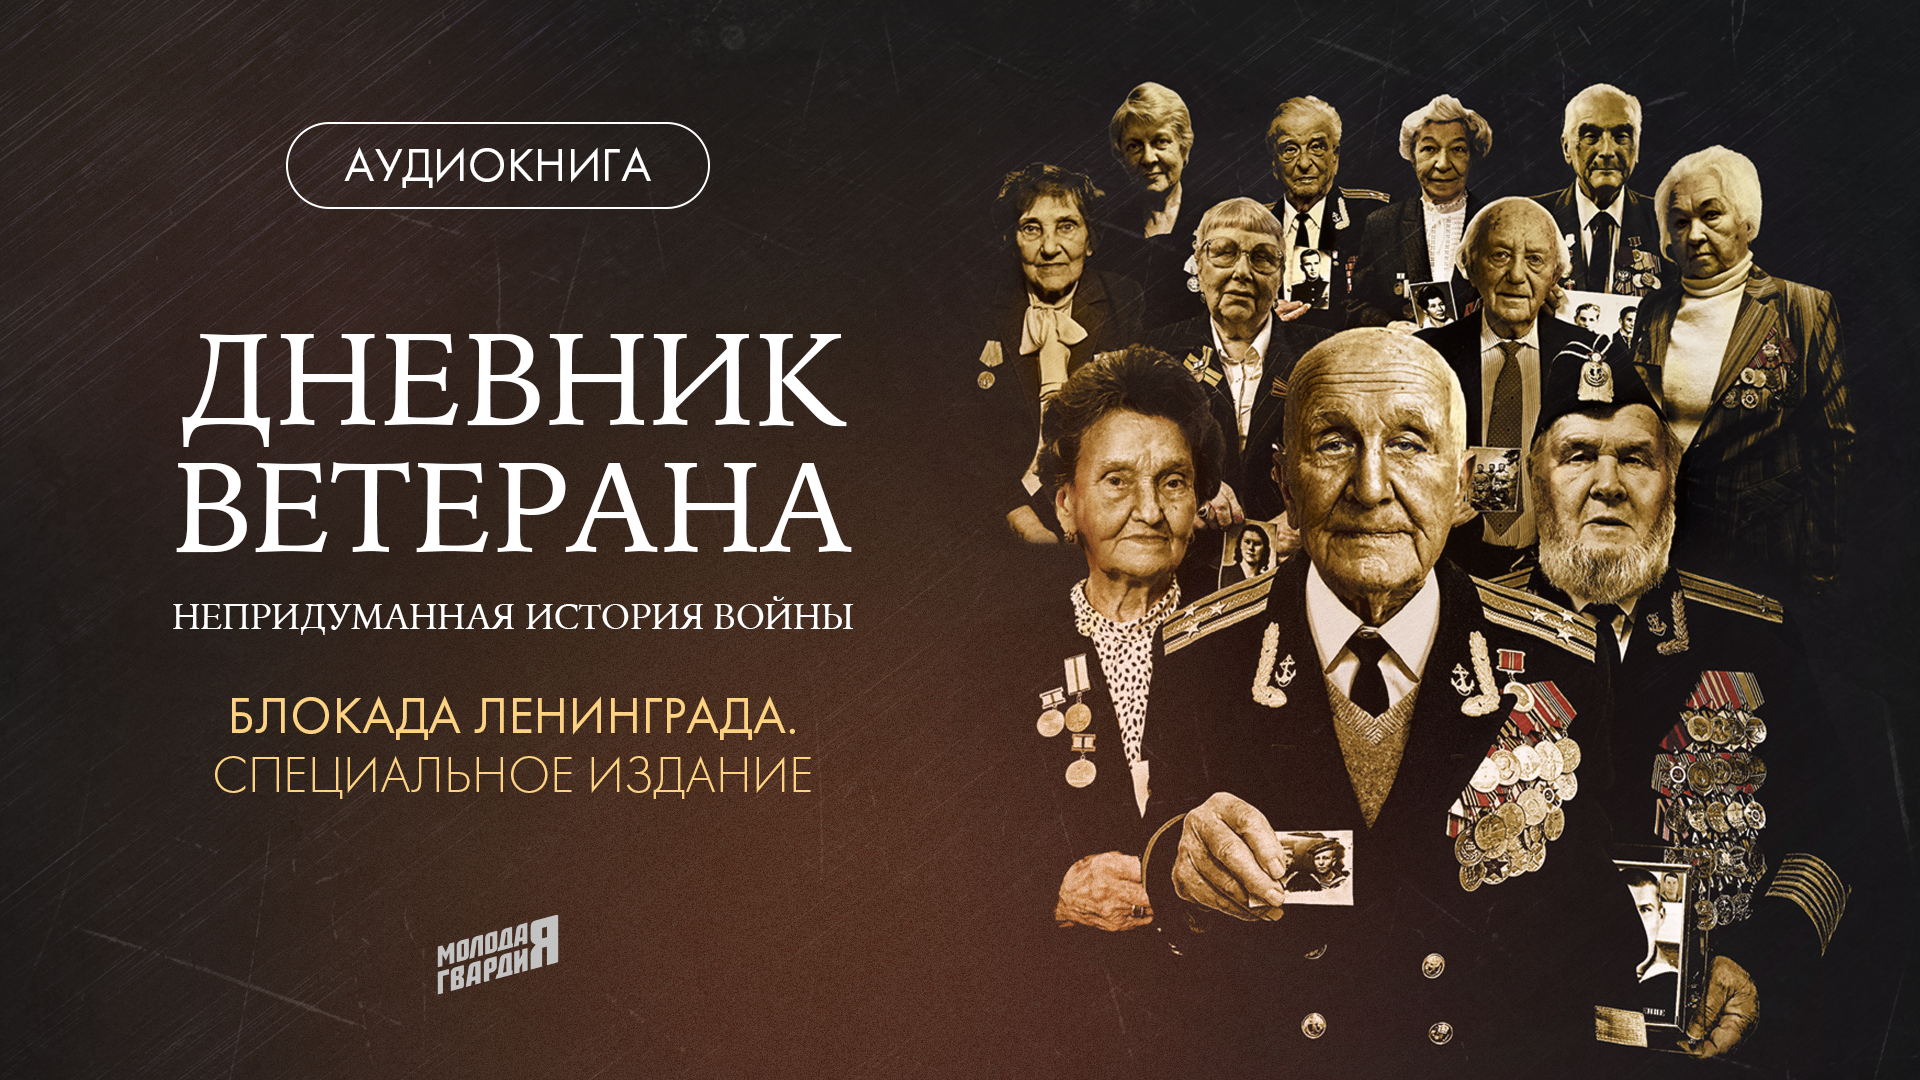 К 79-летию начала блокады Ленинграда МГЕР выпустила вторую аудиокнигу «Дневник ветерана»